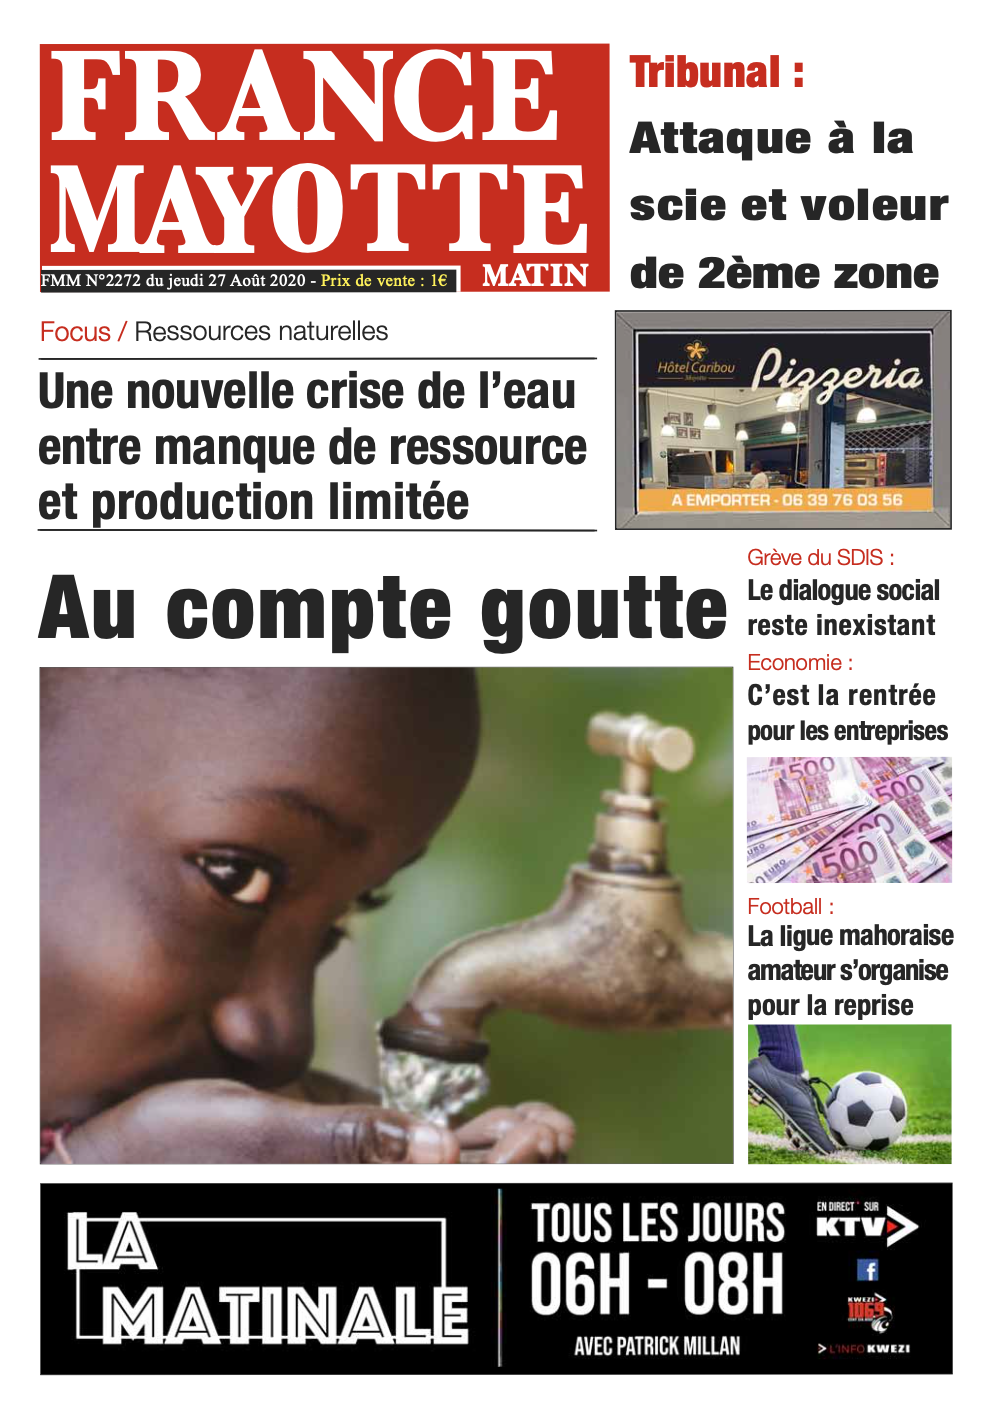 France Mayotte Jeudi 27 août 2020